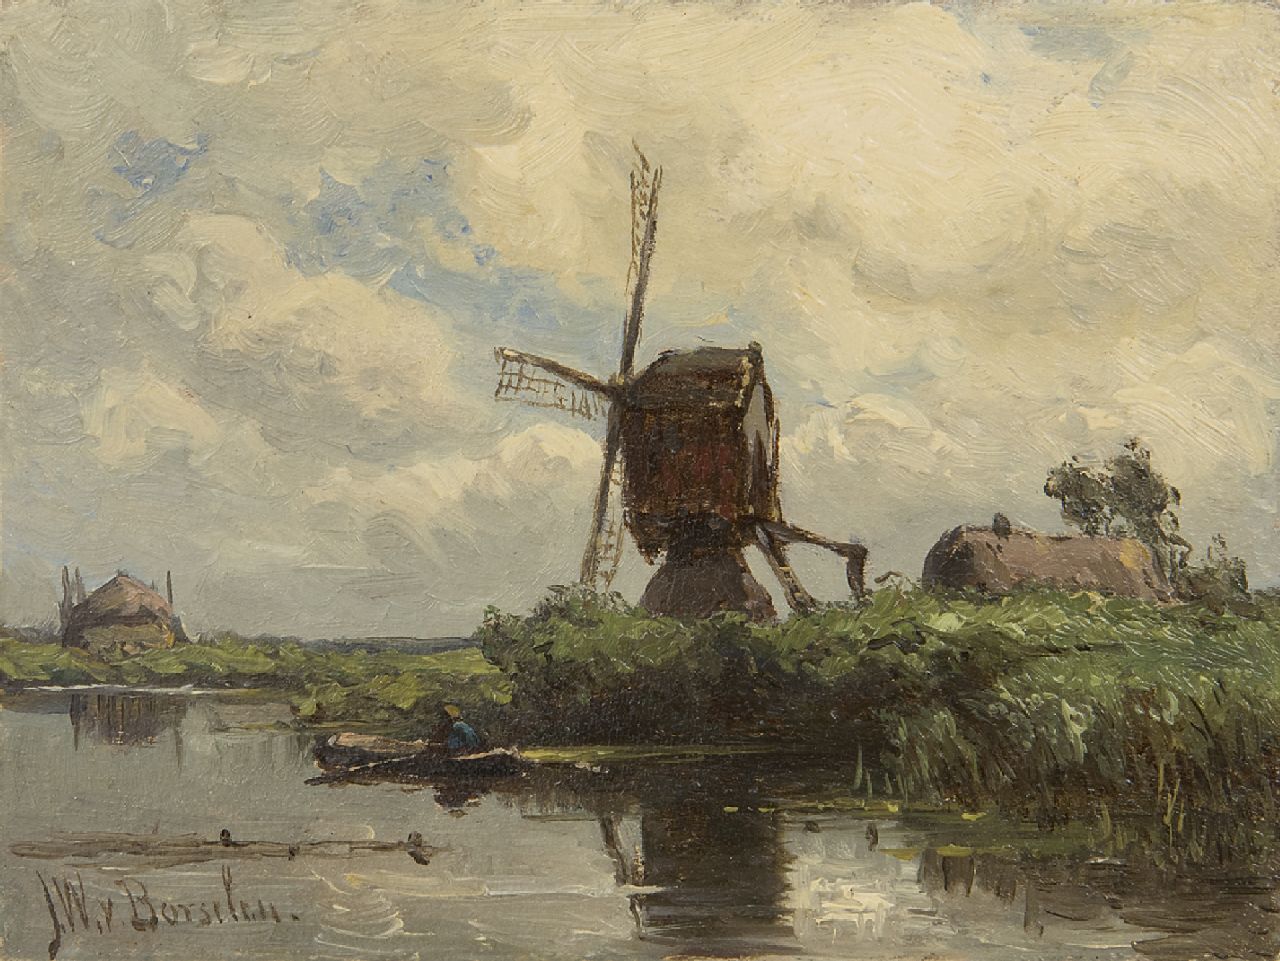 Borselen J.W. van | Jan Willem van Borselen, Wipmolen aan het water, olieverf op paneel 9,0 x 11,9 cm, gesigneerd linksonder